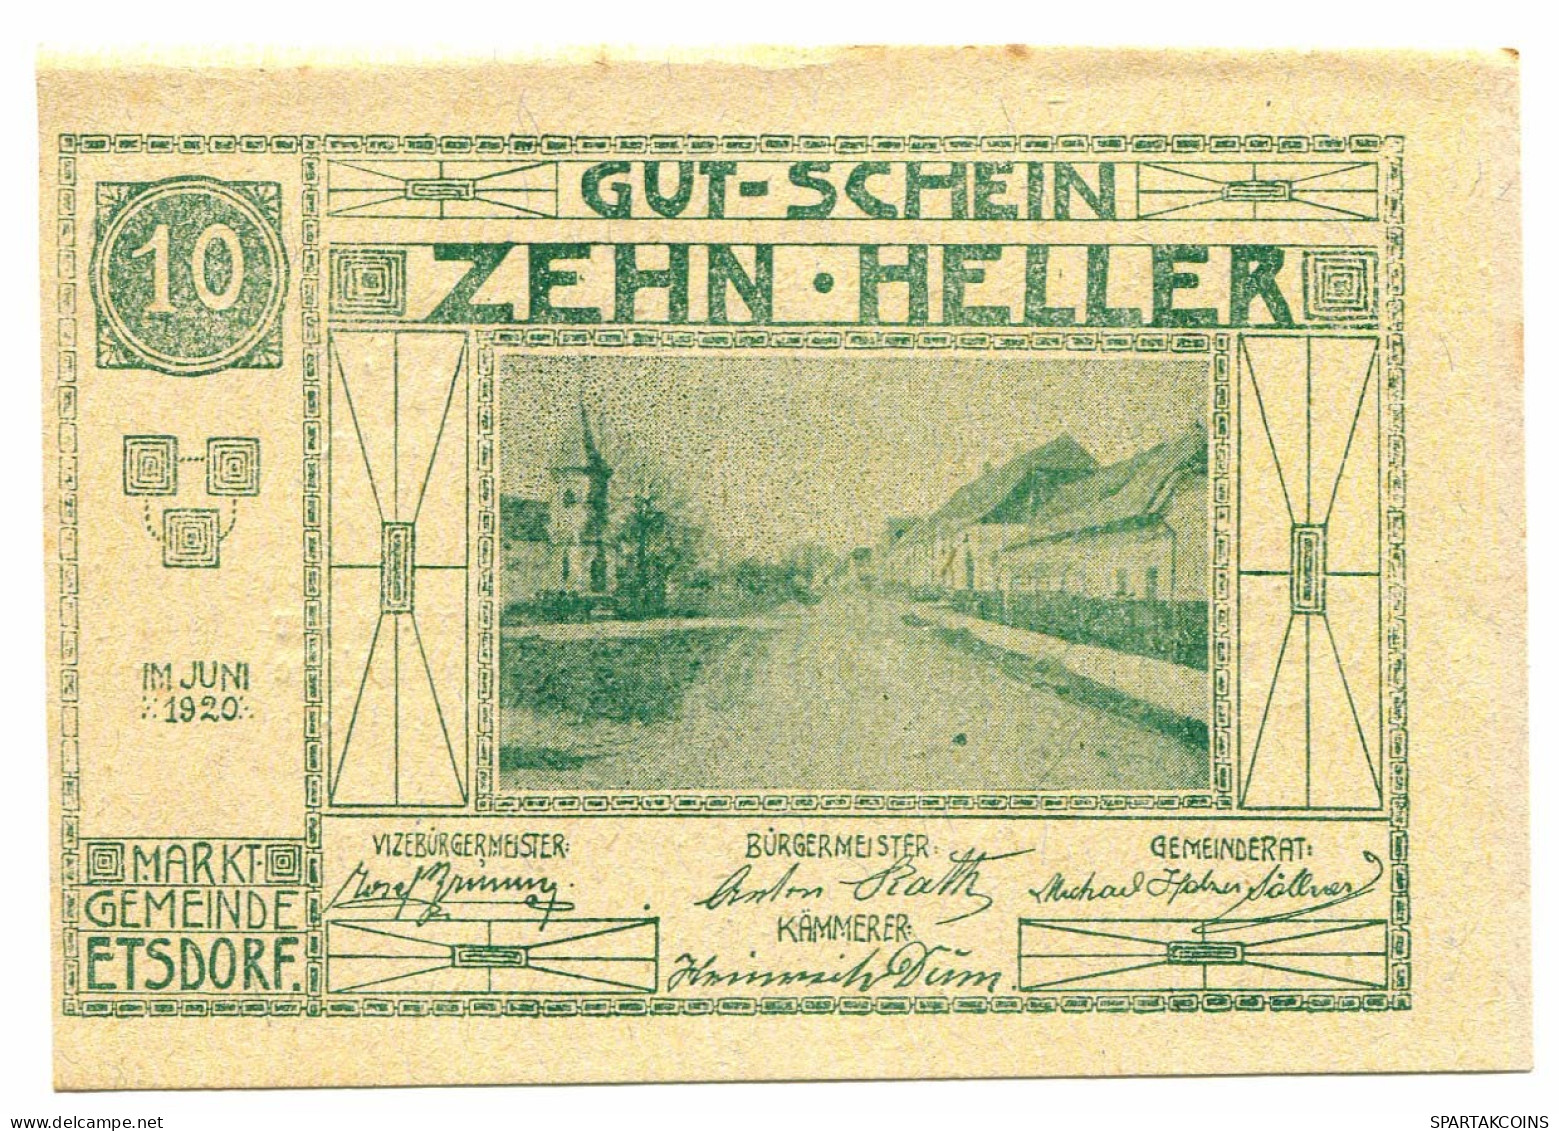 10 Heller 1920 ETSDORF AM KAMP Österreich UNC Notgeld Papiergeld Banknote #P10343 - [11] Local Banknote Issues